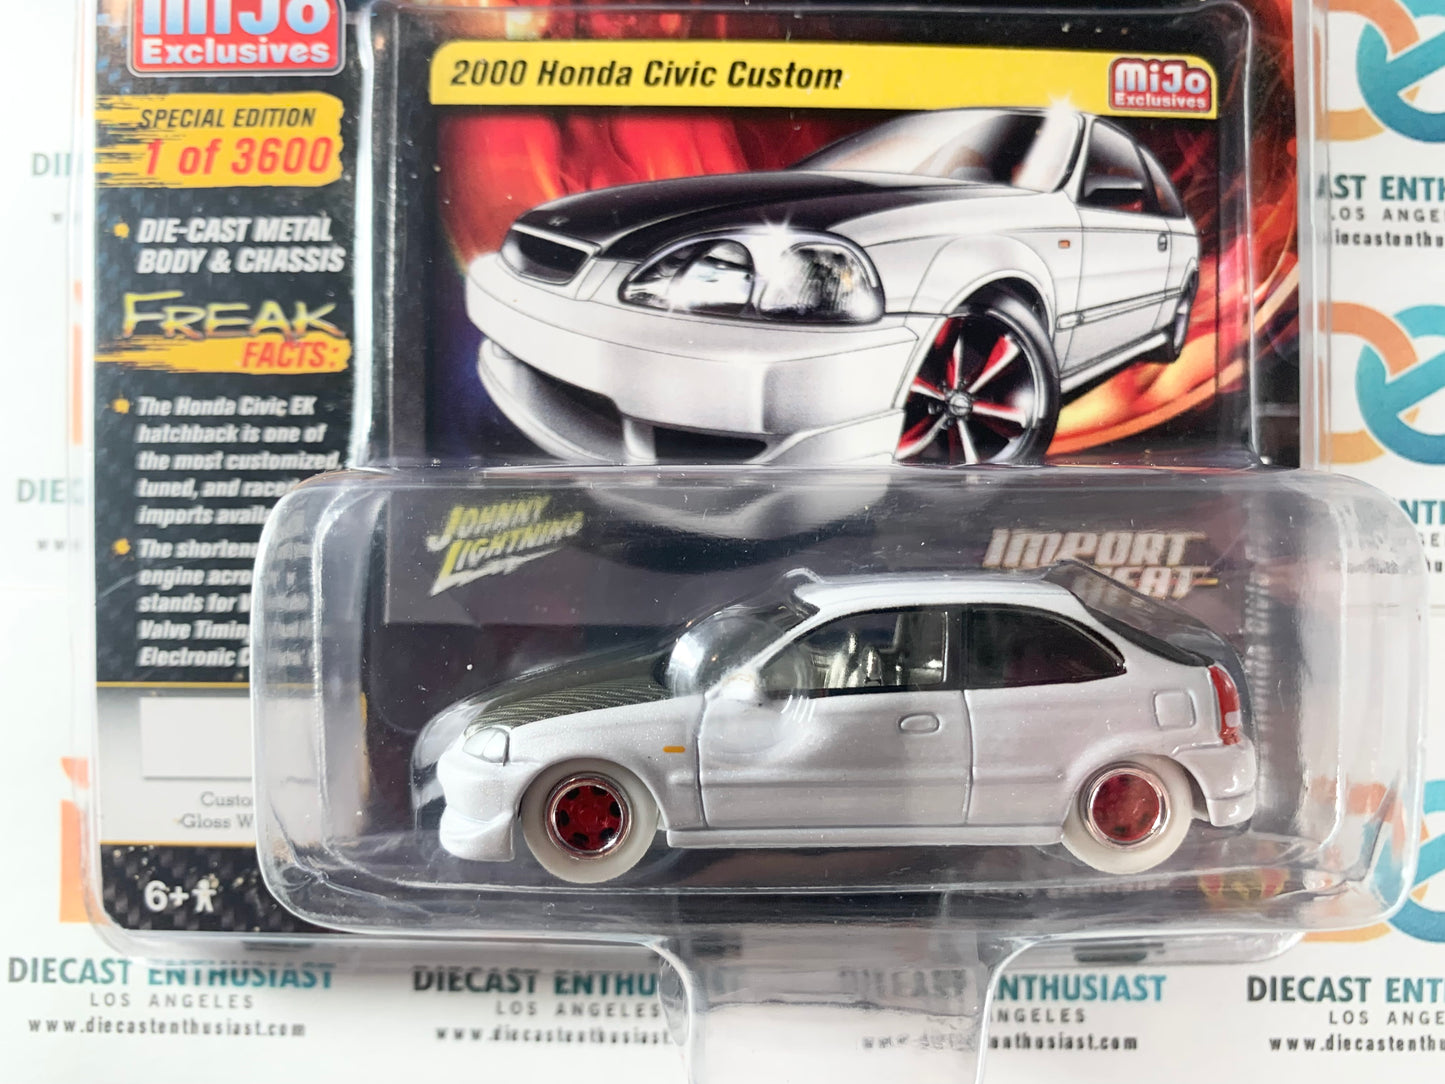 BAD BLISTER CHASE WHITE LIGHTNING Johnny Lightning Mijo Exclusives Import Heat 2000 Honda Civic Custom Gloss White 1:64